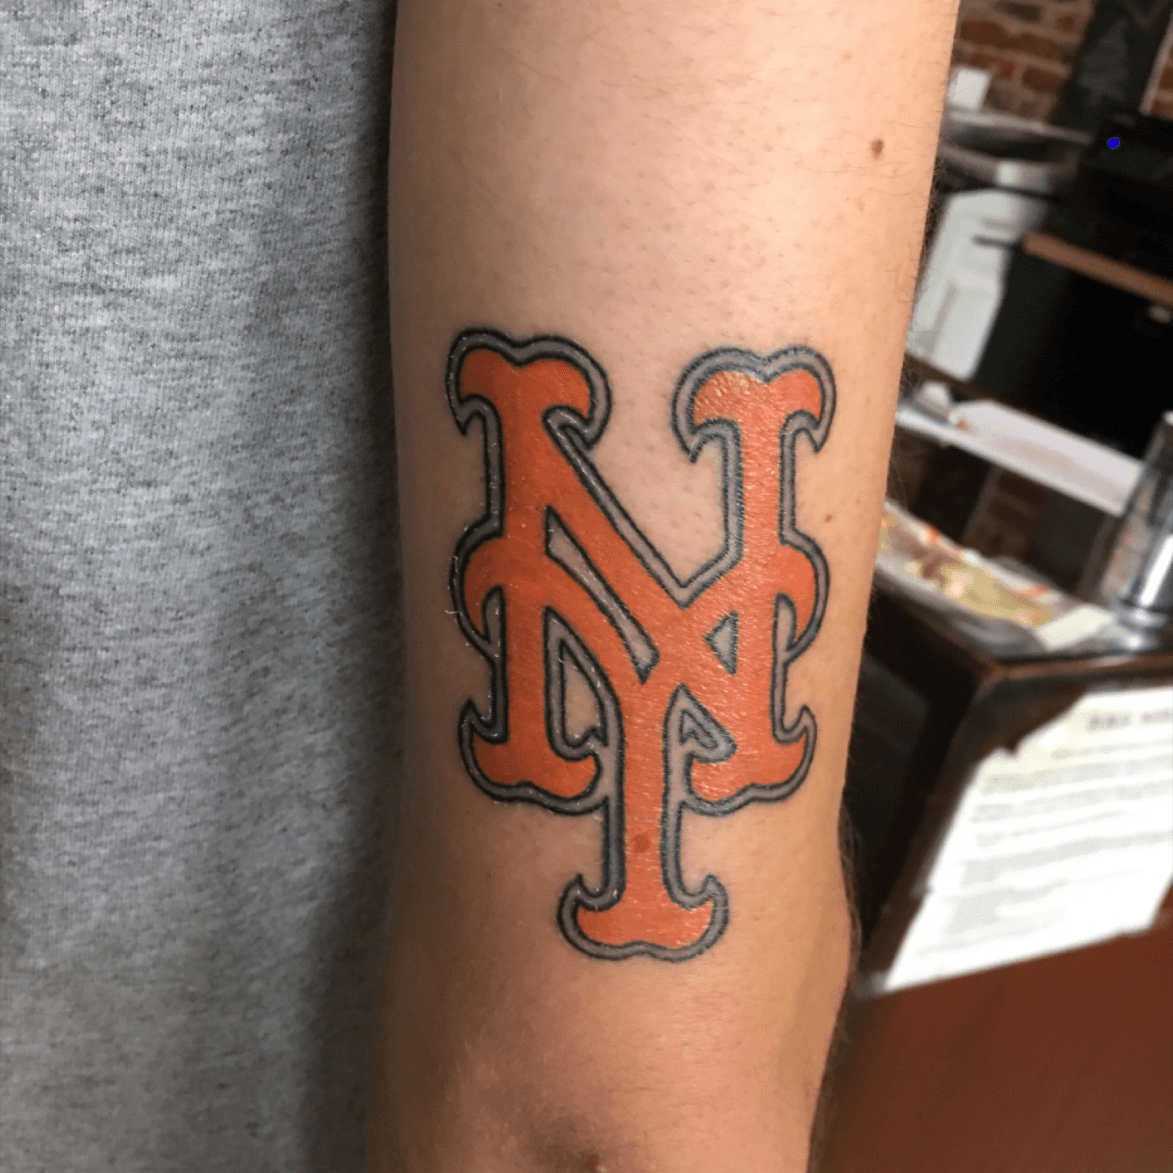 I love NY logo tattoo